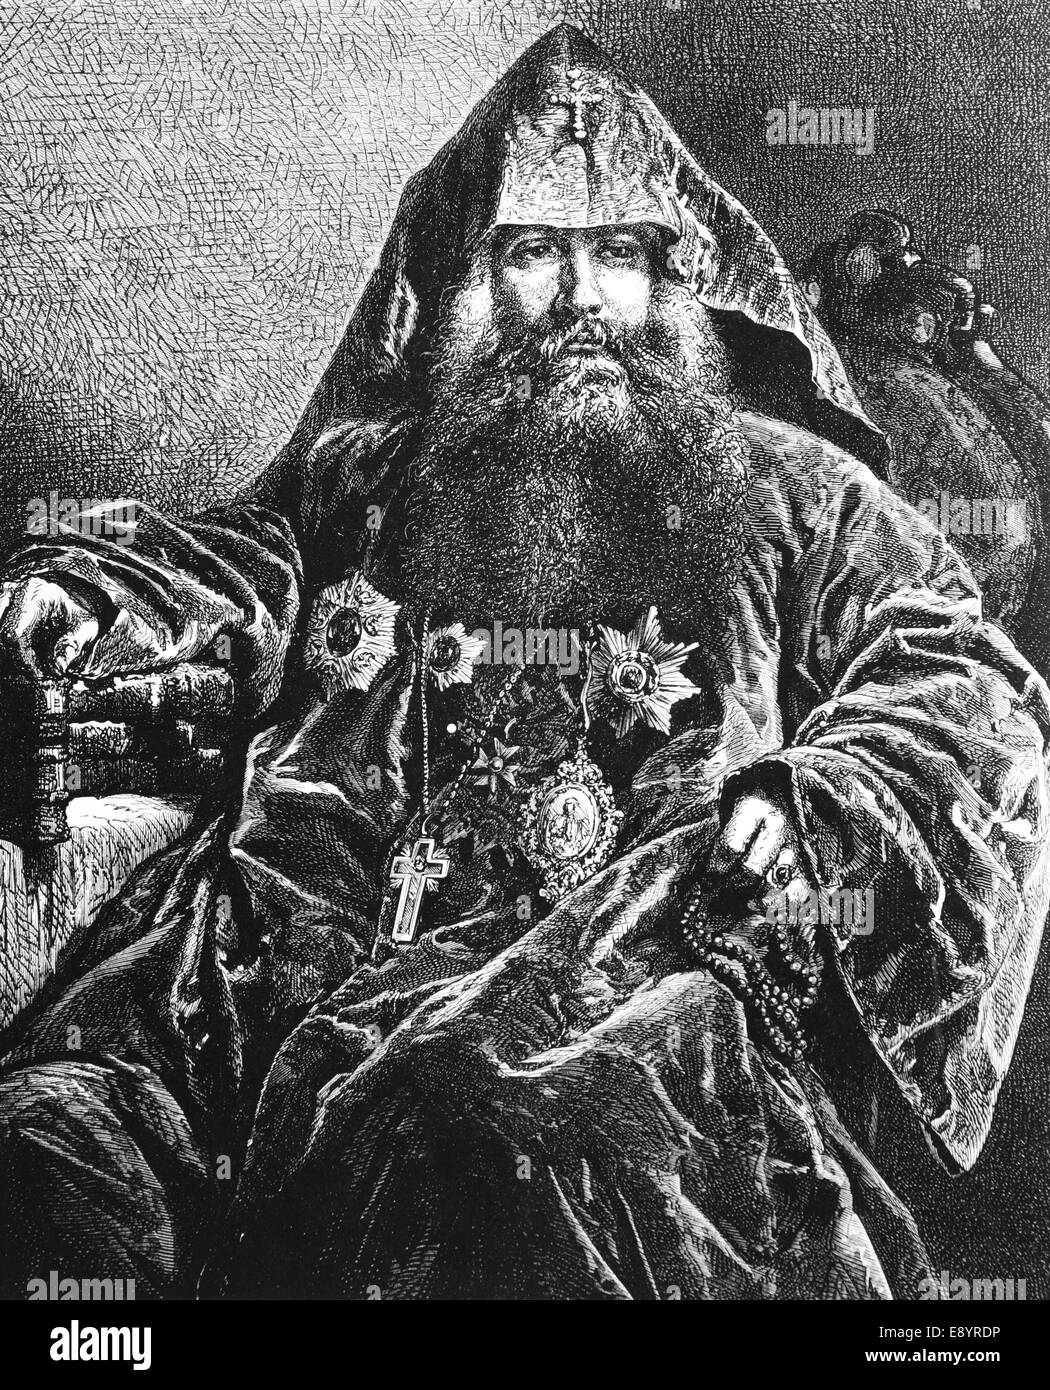 Uzbekistan. Asia. Armenian Patriarch, 1870. Engraving, 19th century. Stock Photo